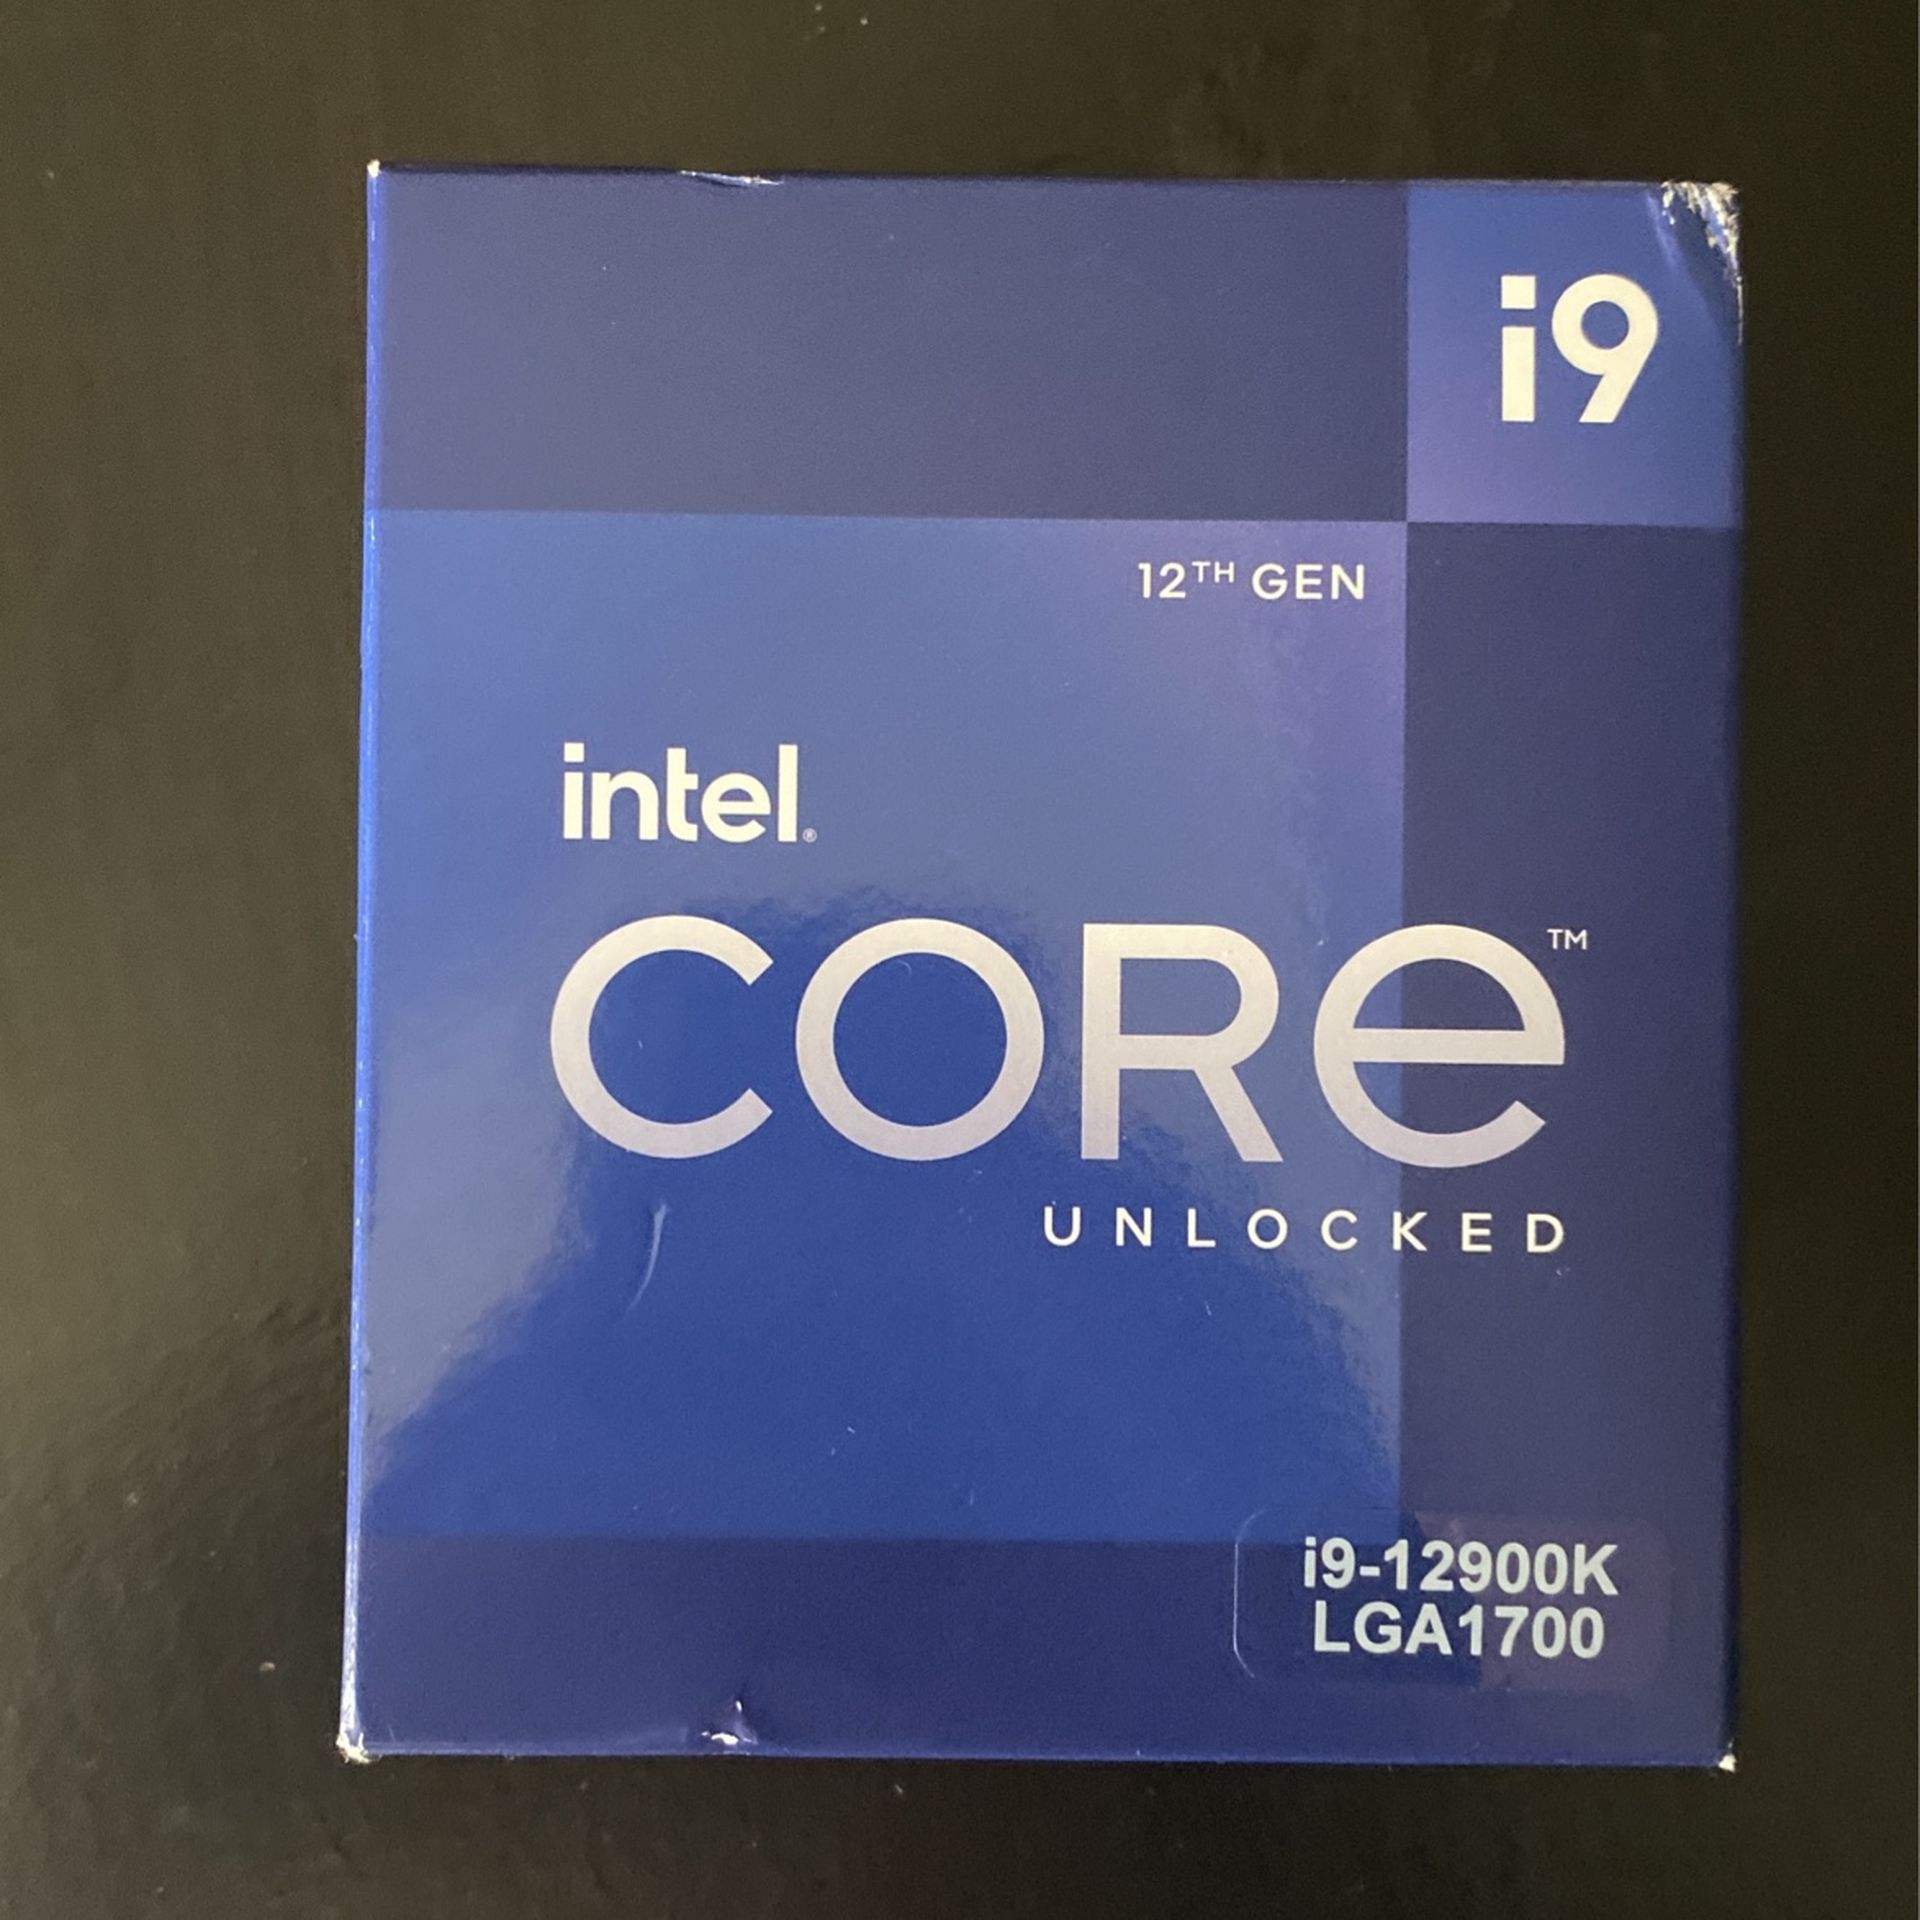 Intel Core i9 12th Gen 